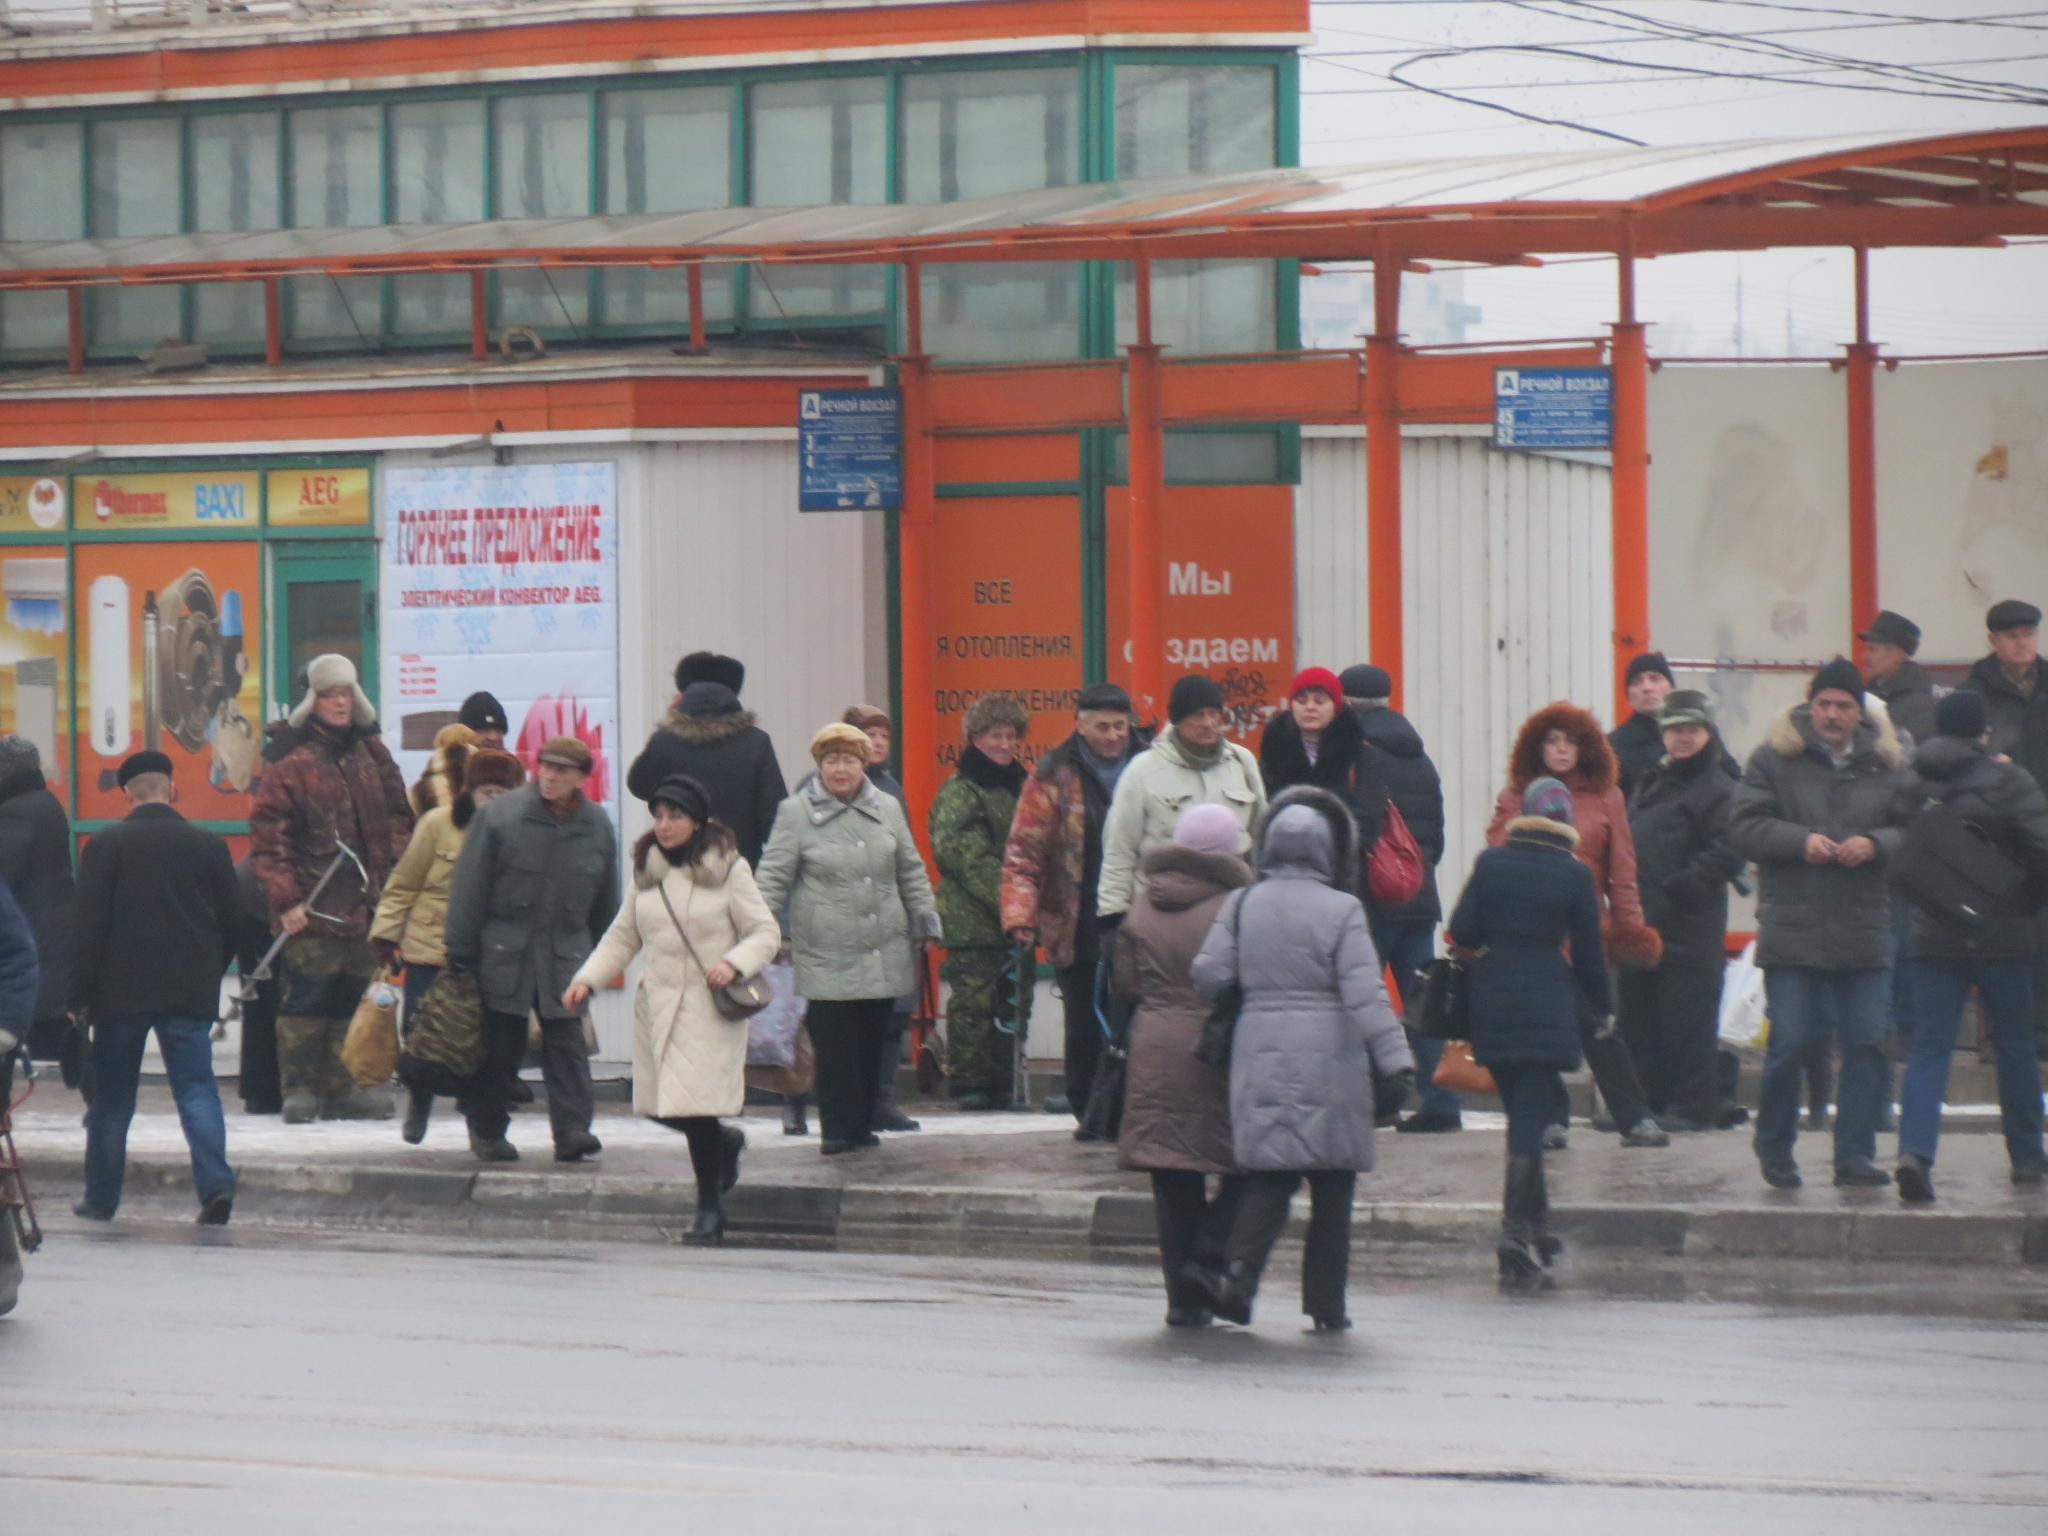 Транспортный ад: нижегородцы подписывают петицию о возврате отмененных маршрутов